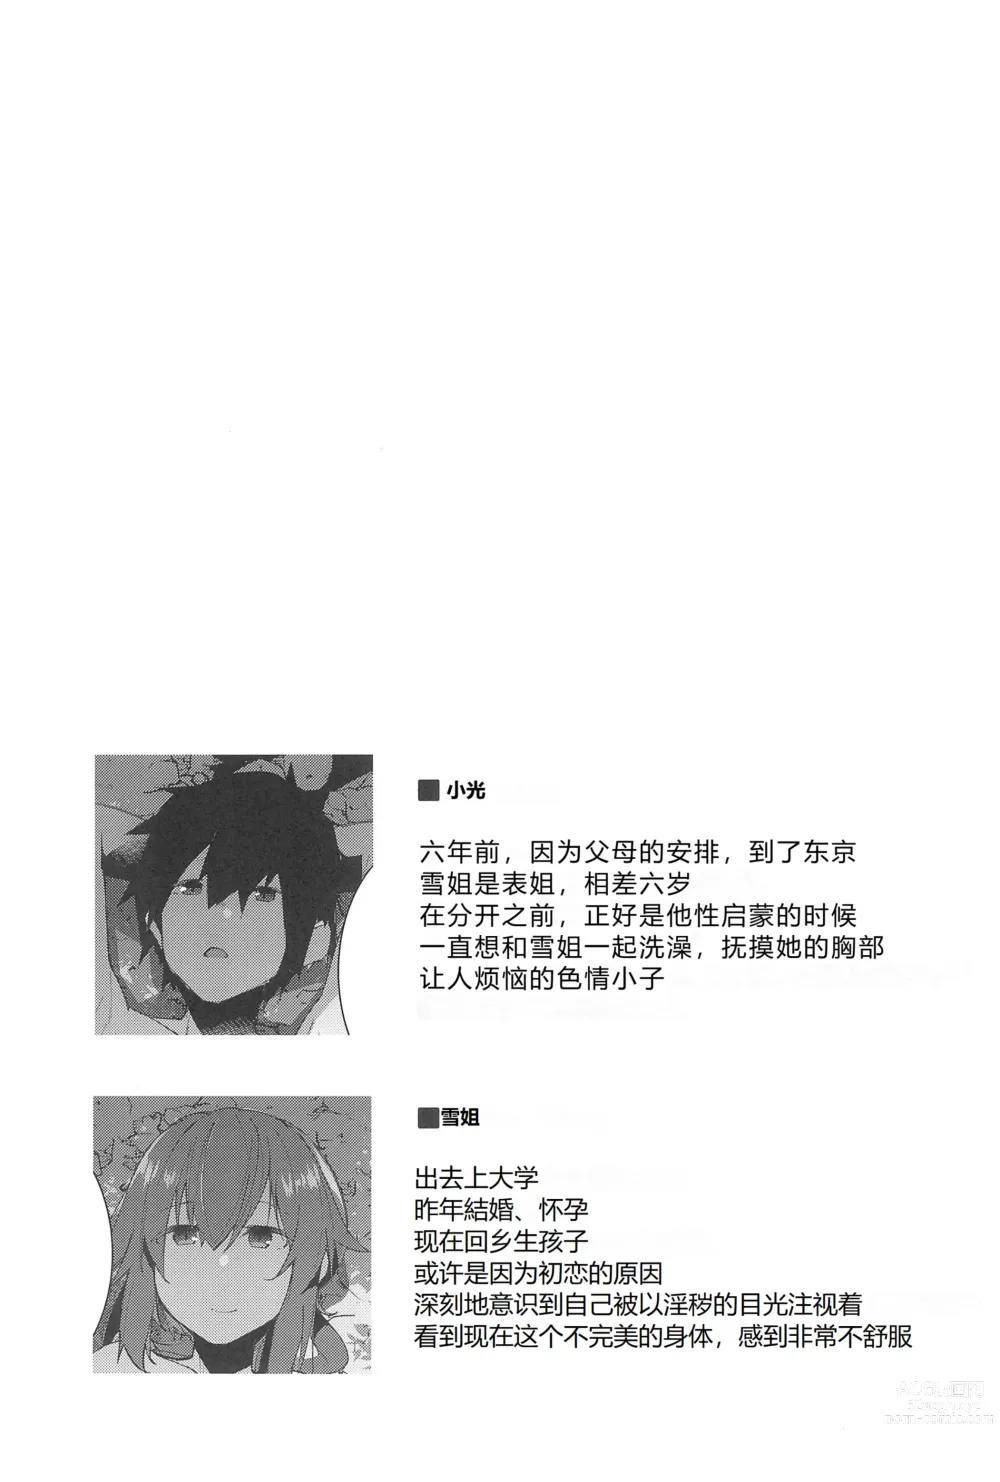 Page 37 of doujinshi Natsu No Owari